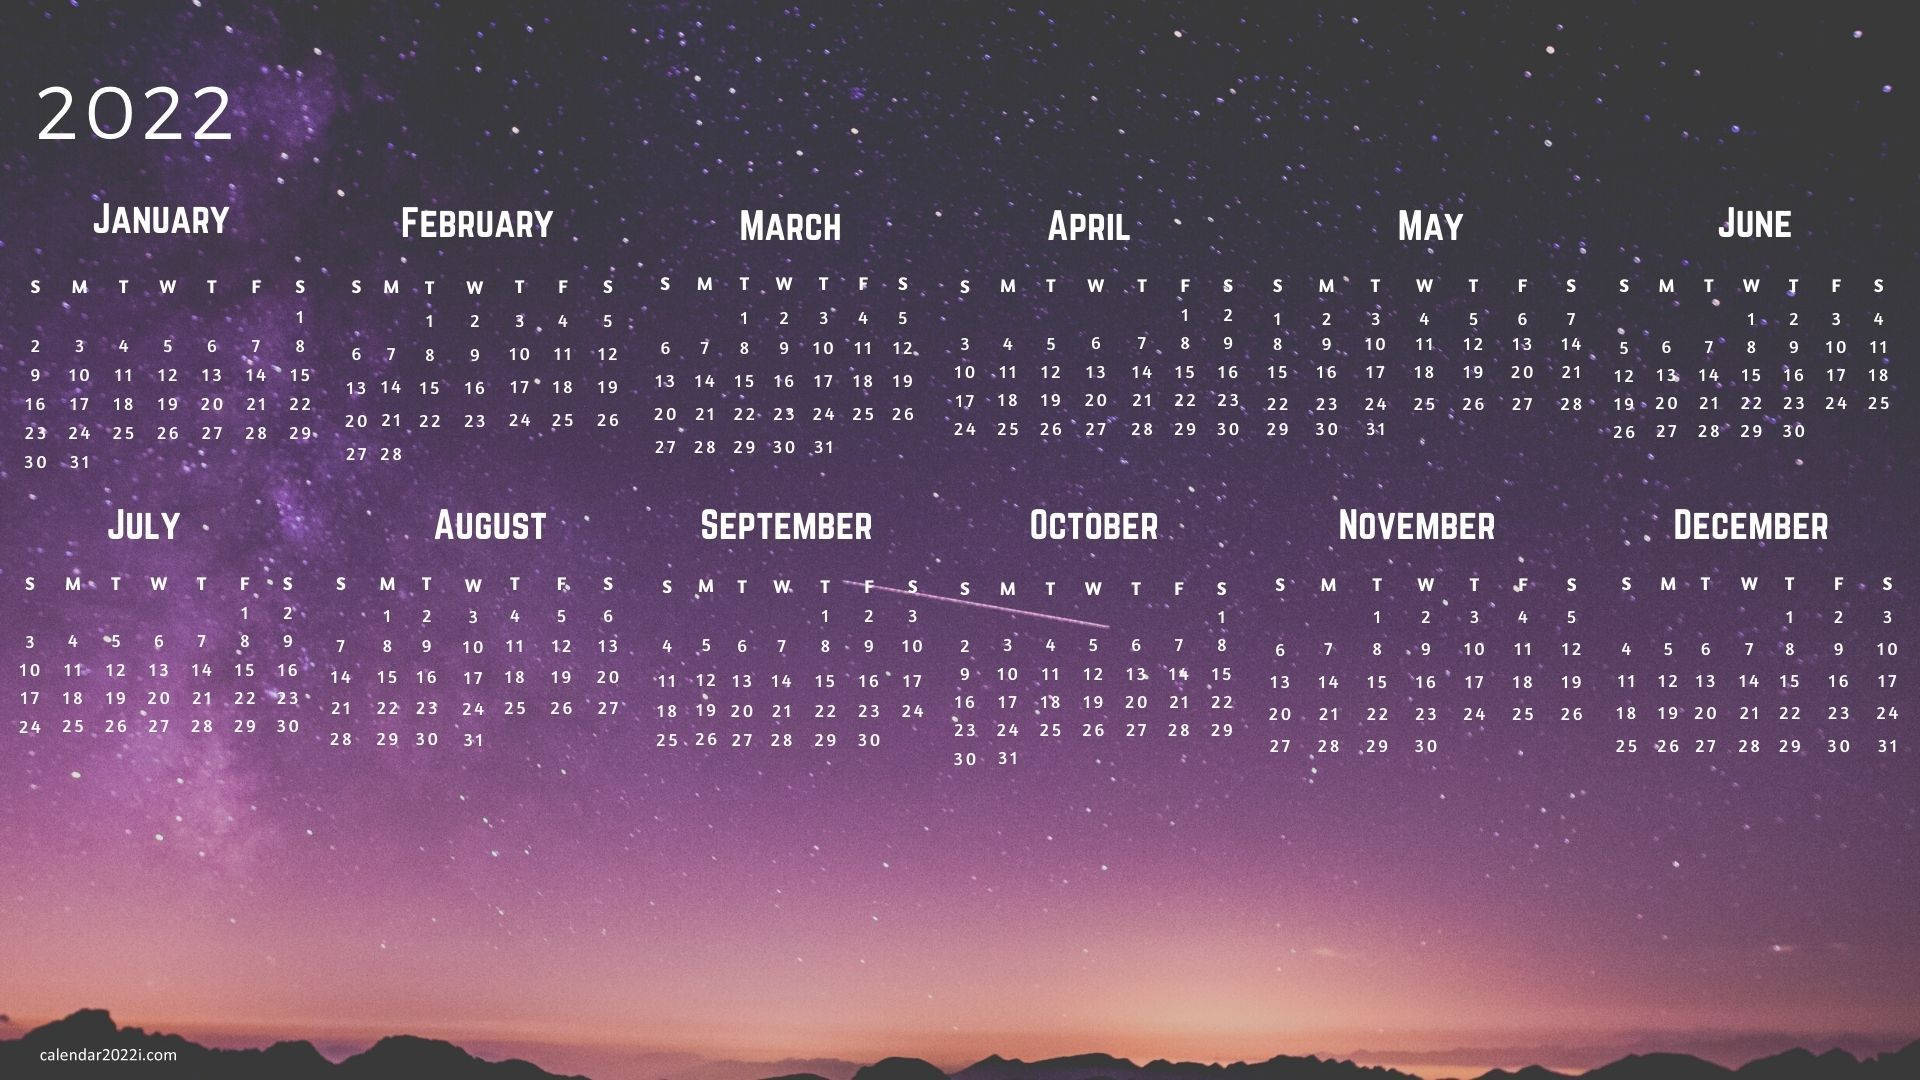 Et lilla himmel med stjerner og en kalender på det. Wallpaper